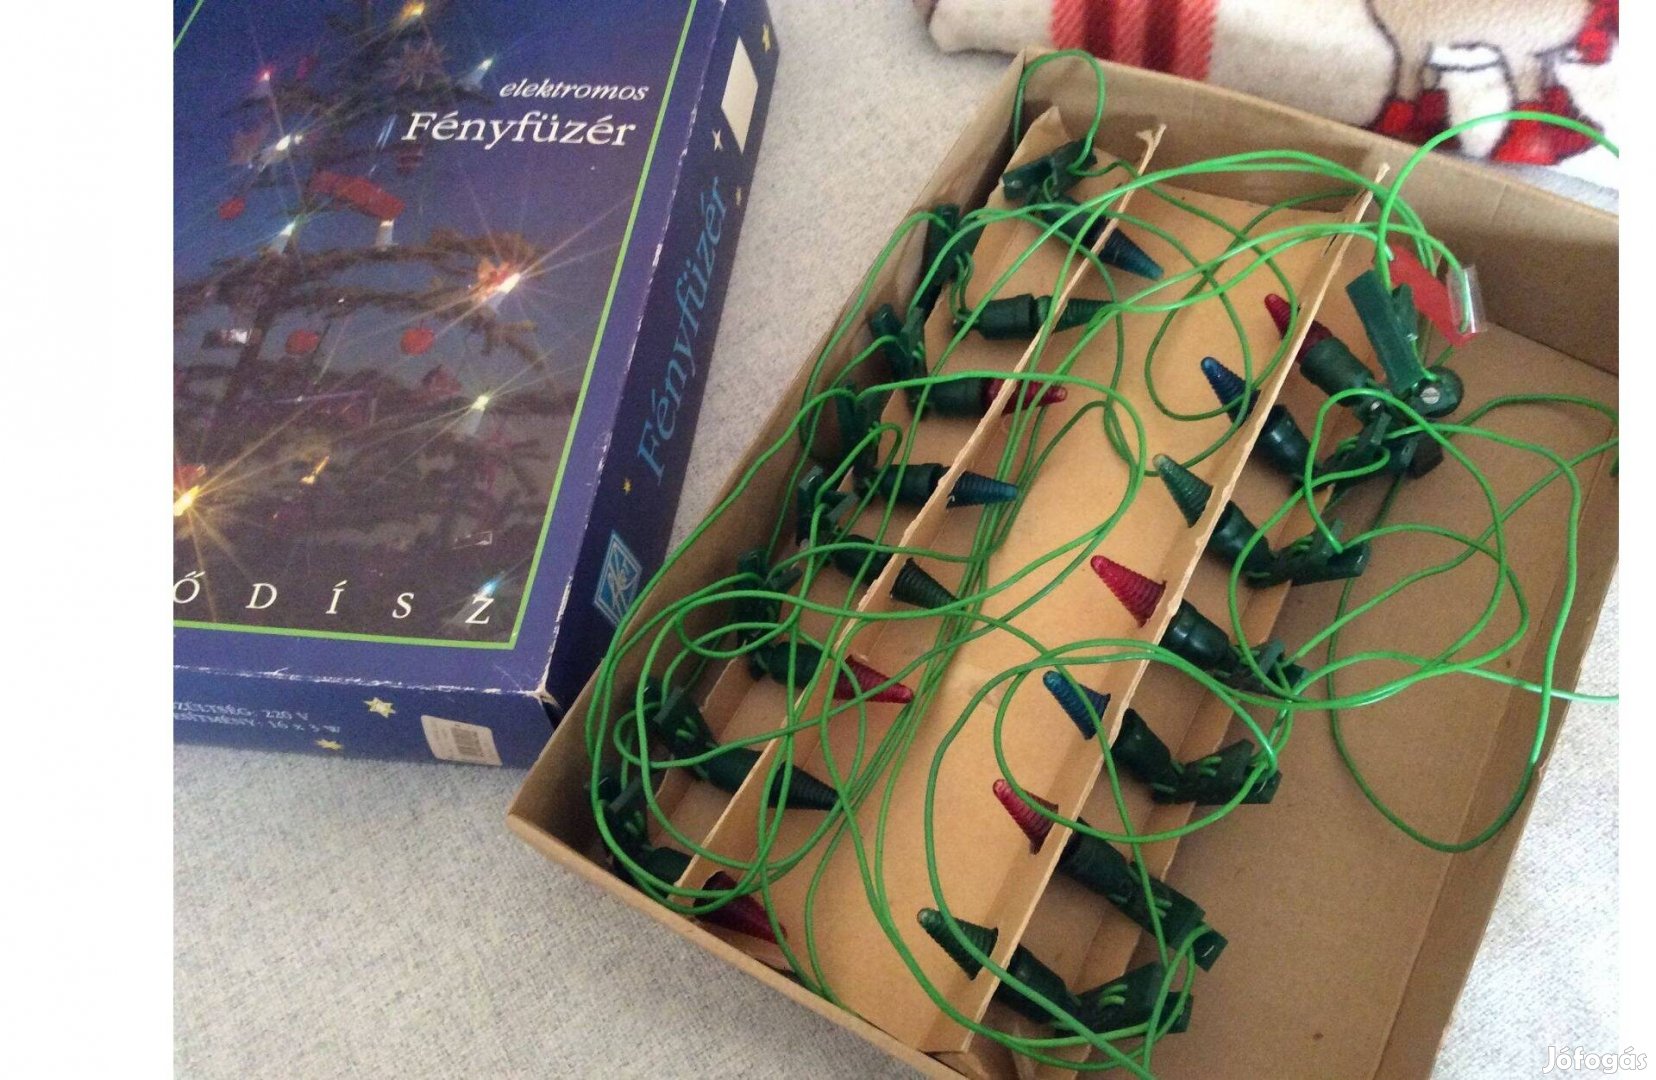 Karácsonyi fényfűzér Retró izzósor égősor eredeti dobozában kis hiba